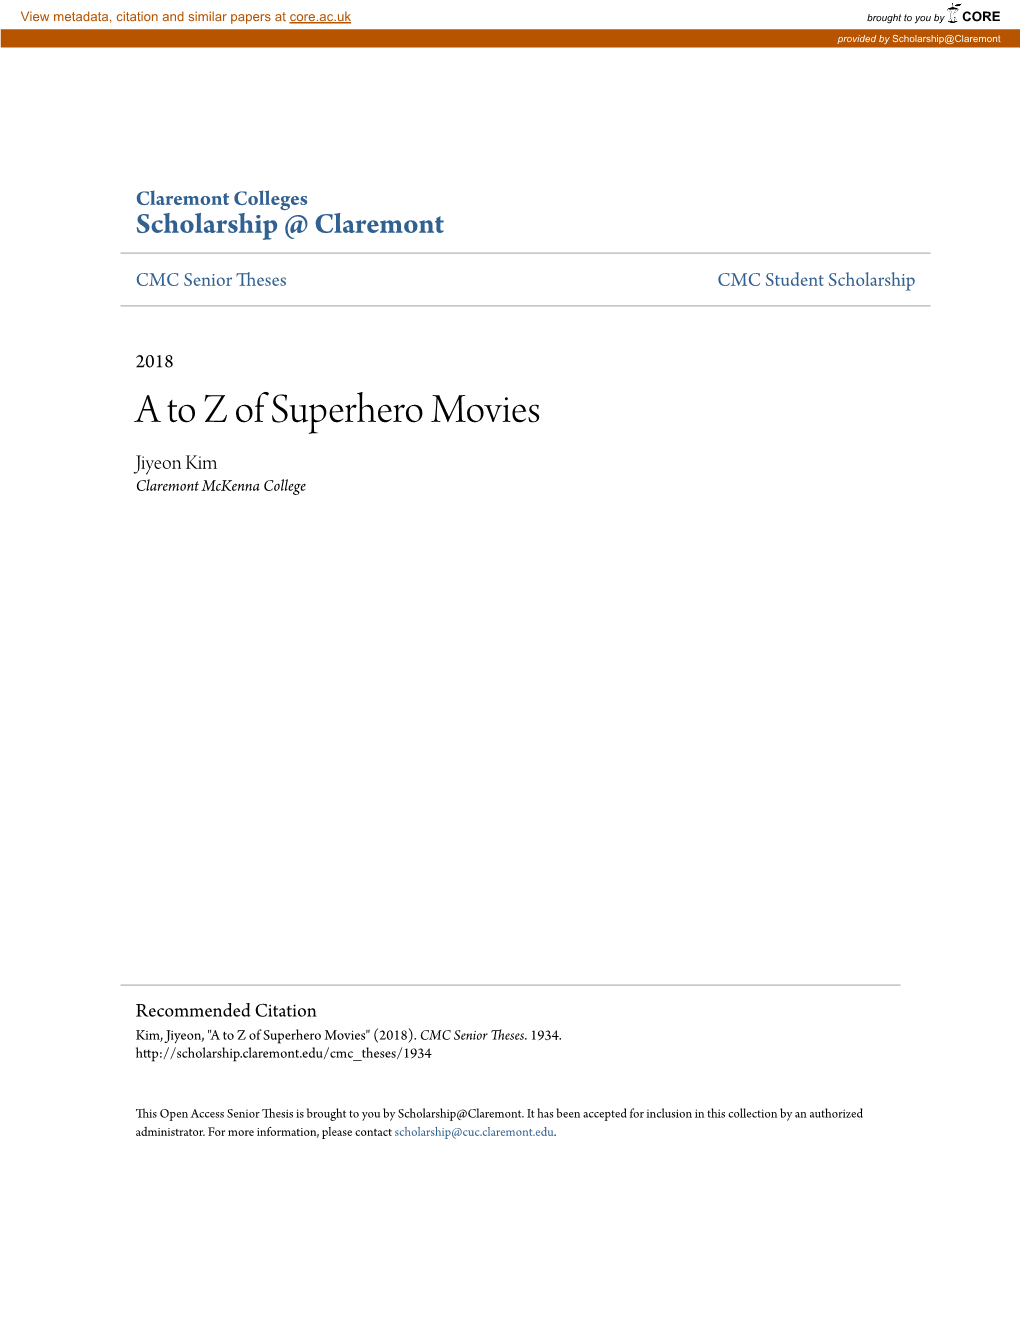 A to Z of Superhero Movies Jiyeon Kim Claremont Mckenna College